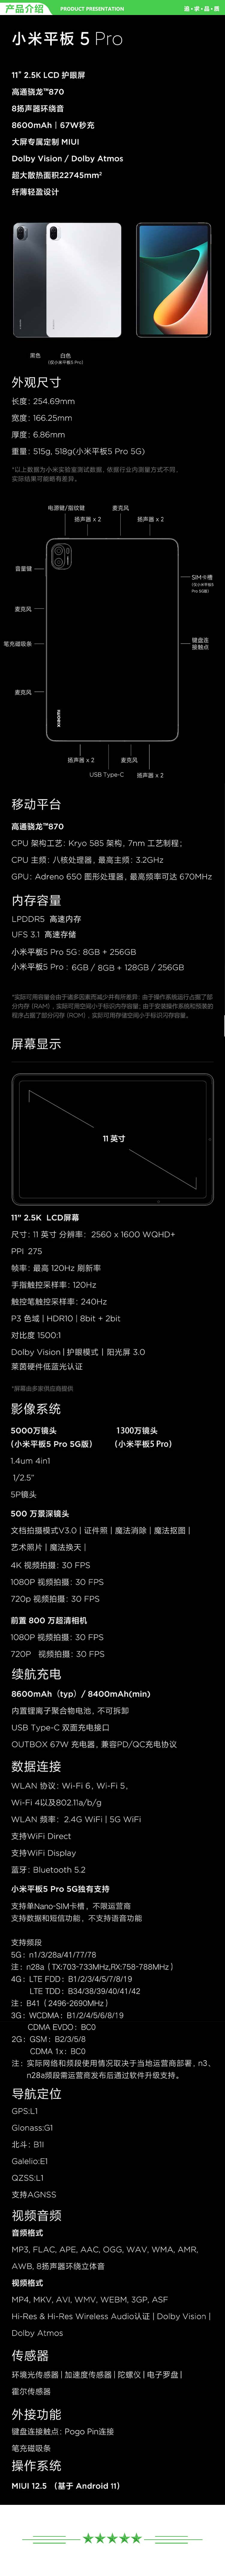 小米 xiaomi 平板5 Pro 平板电脑（11英寸2.5K高清 120Hz 骁龙860 6G+128GB 67W快充 杜比影音娱乐办公 黑色）.jpg